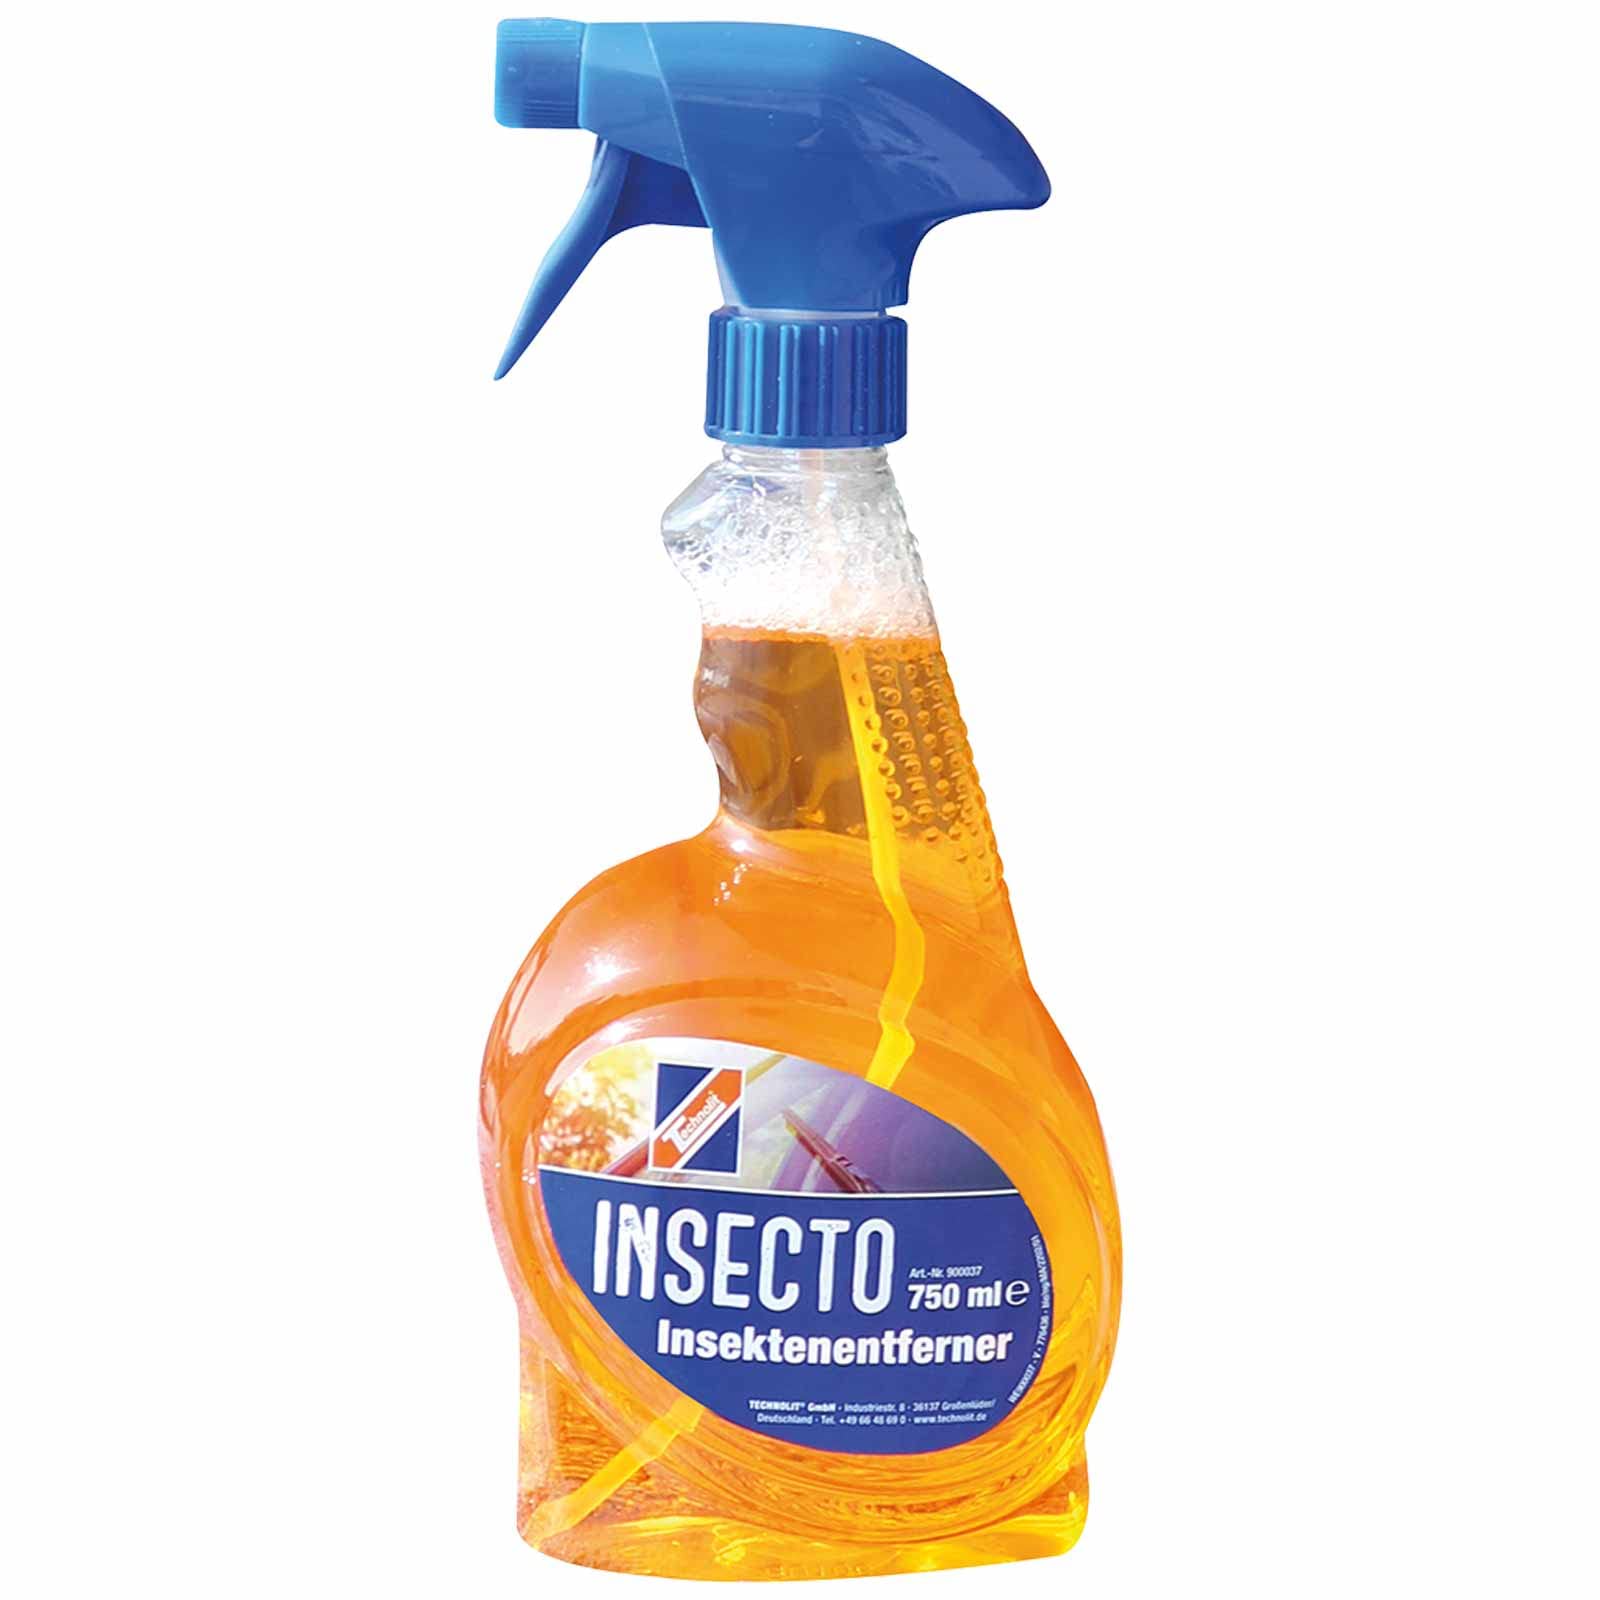 TECHNOLIT Insektenentferner Insecto, Insektenreiniger für Lack, Kunststoff, Glas, Chrom-Oberflächen, Inhalt:0.75 Liter von TECHNOLIT